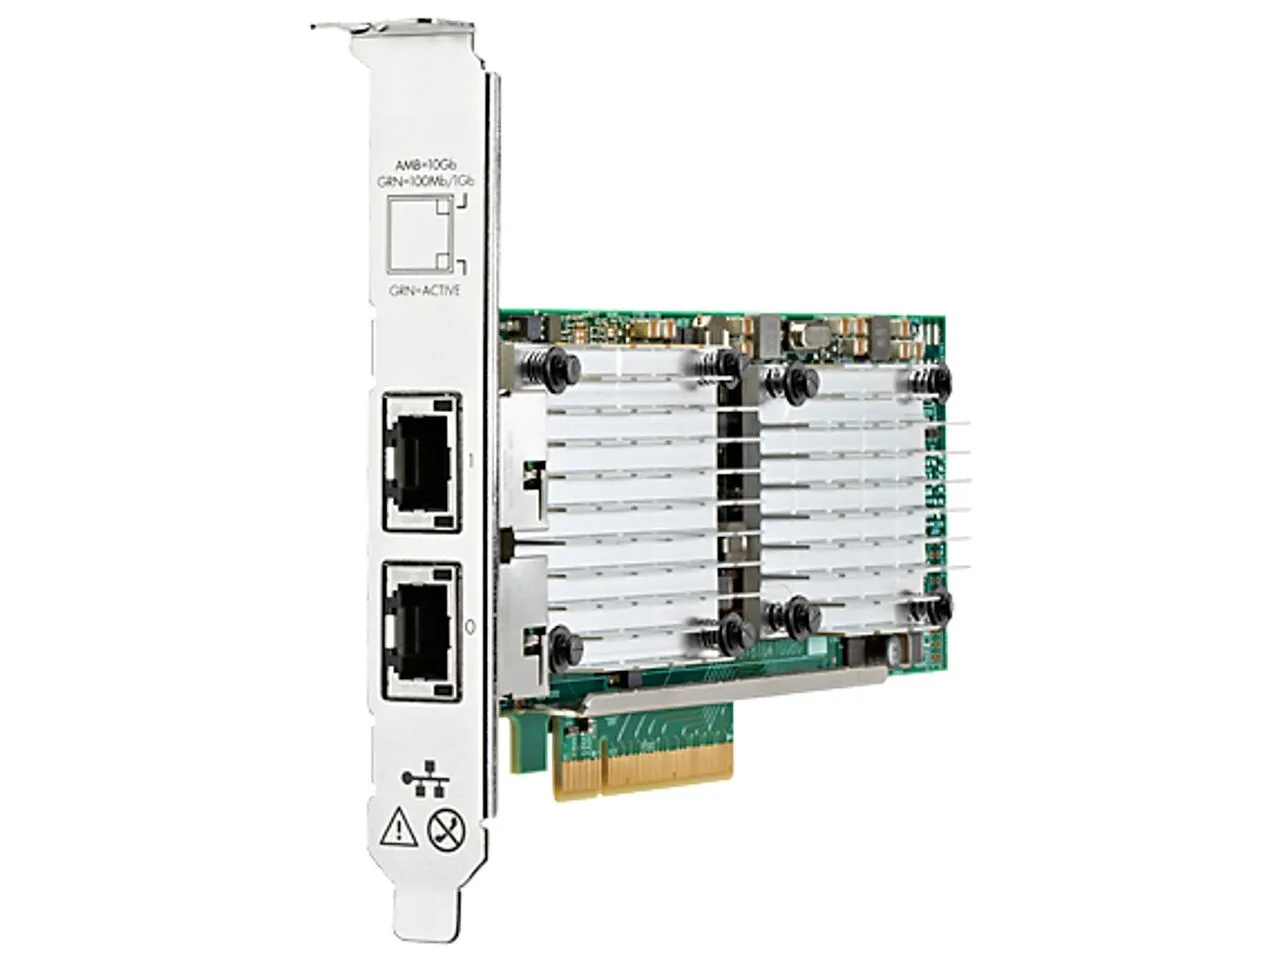   Network Adapter 657128-002 for HPE Proliant ML110 Gen10 Server 